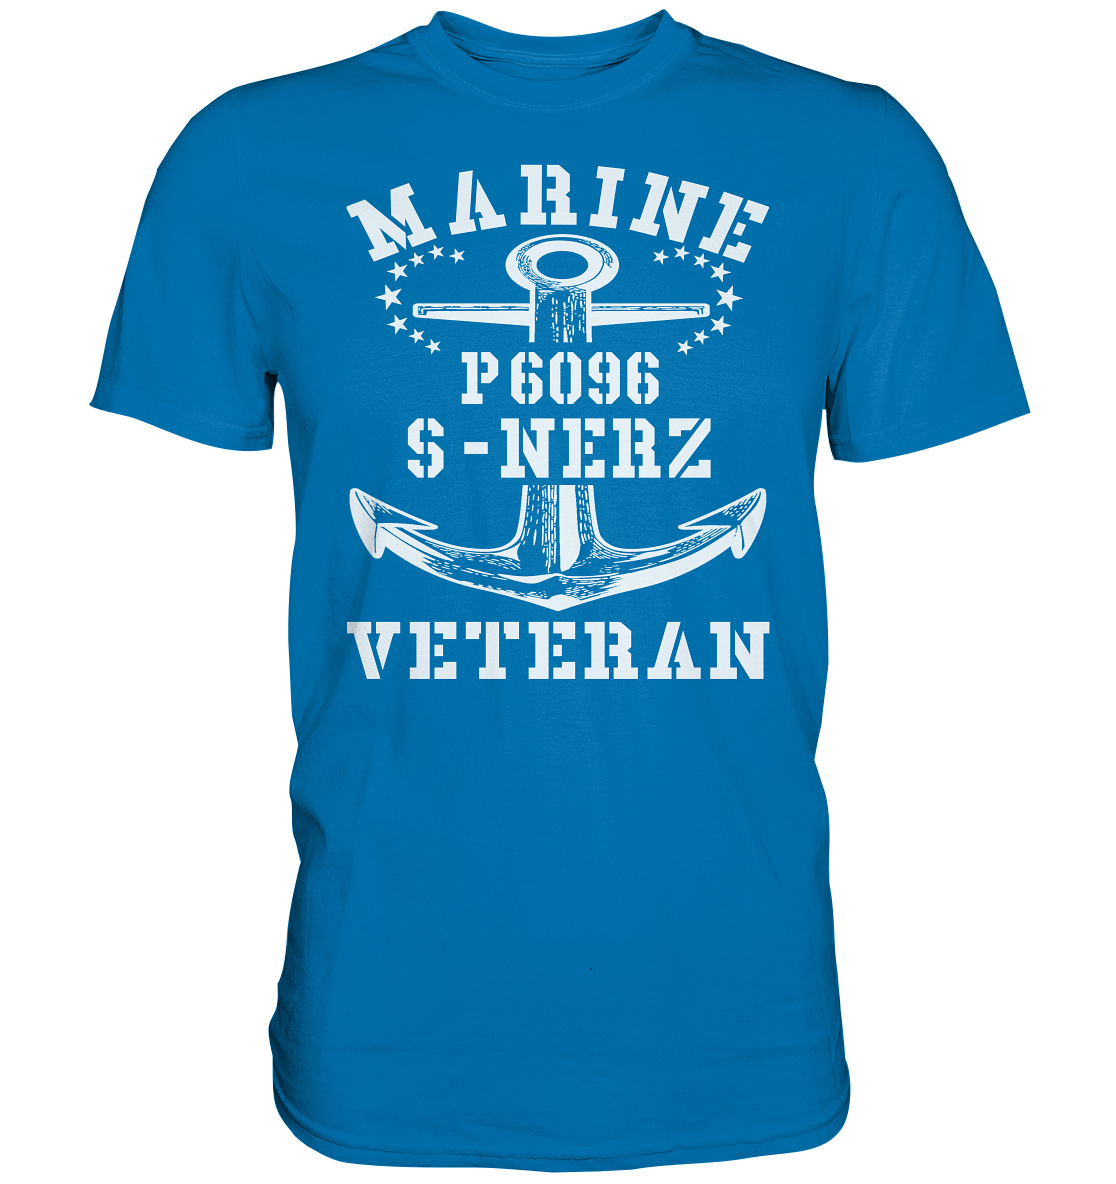 P6096 S-NERZ Marine Veteran - Premium Shirt